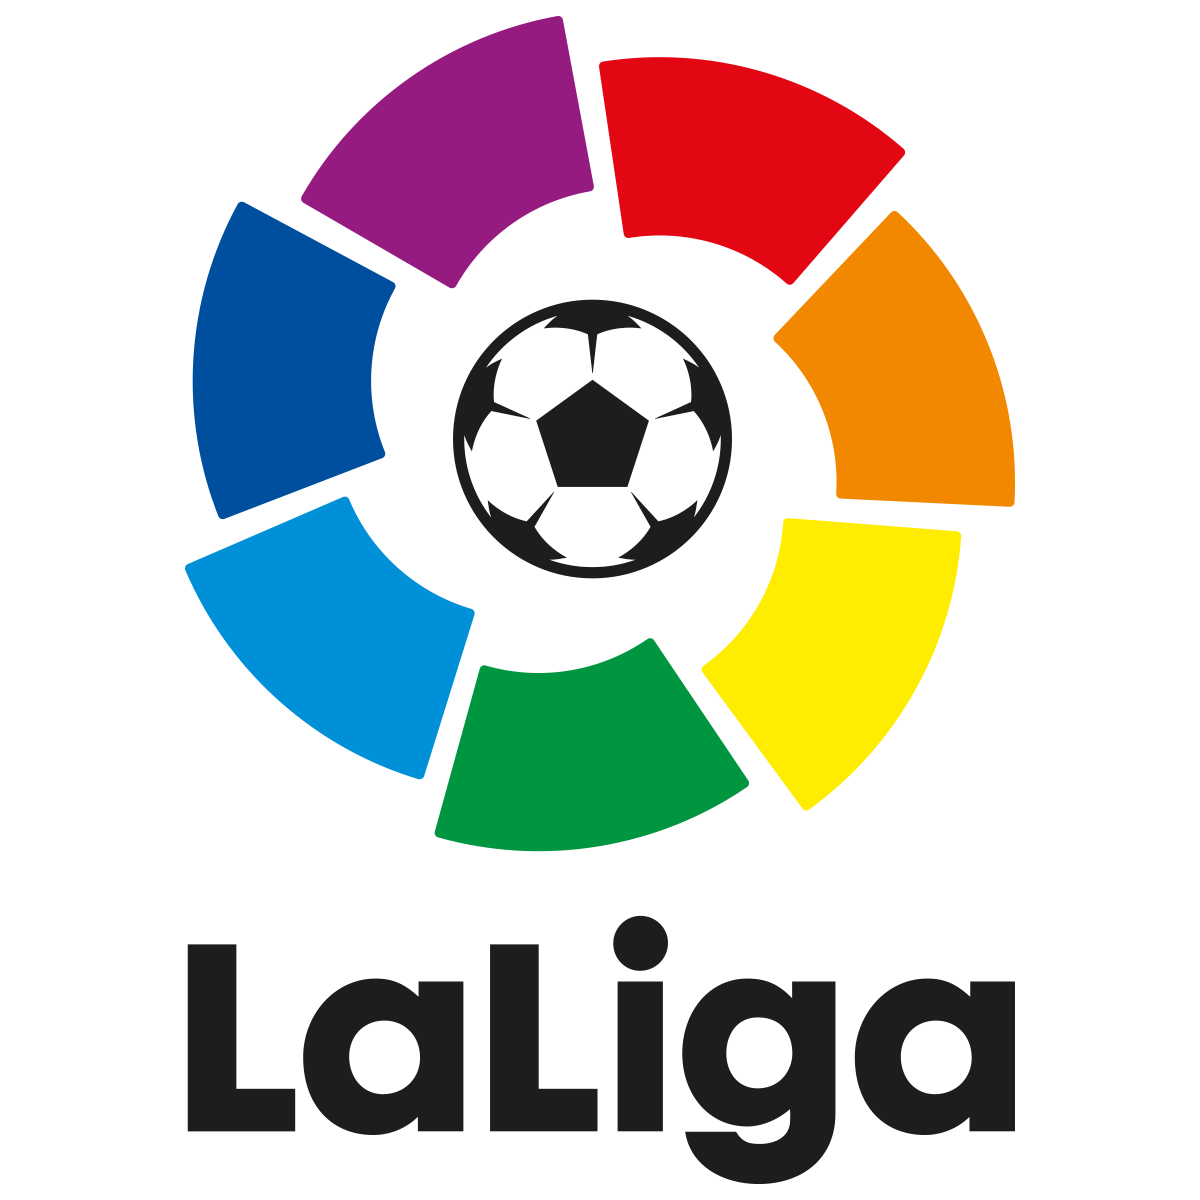 Logos | LaLiga